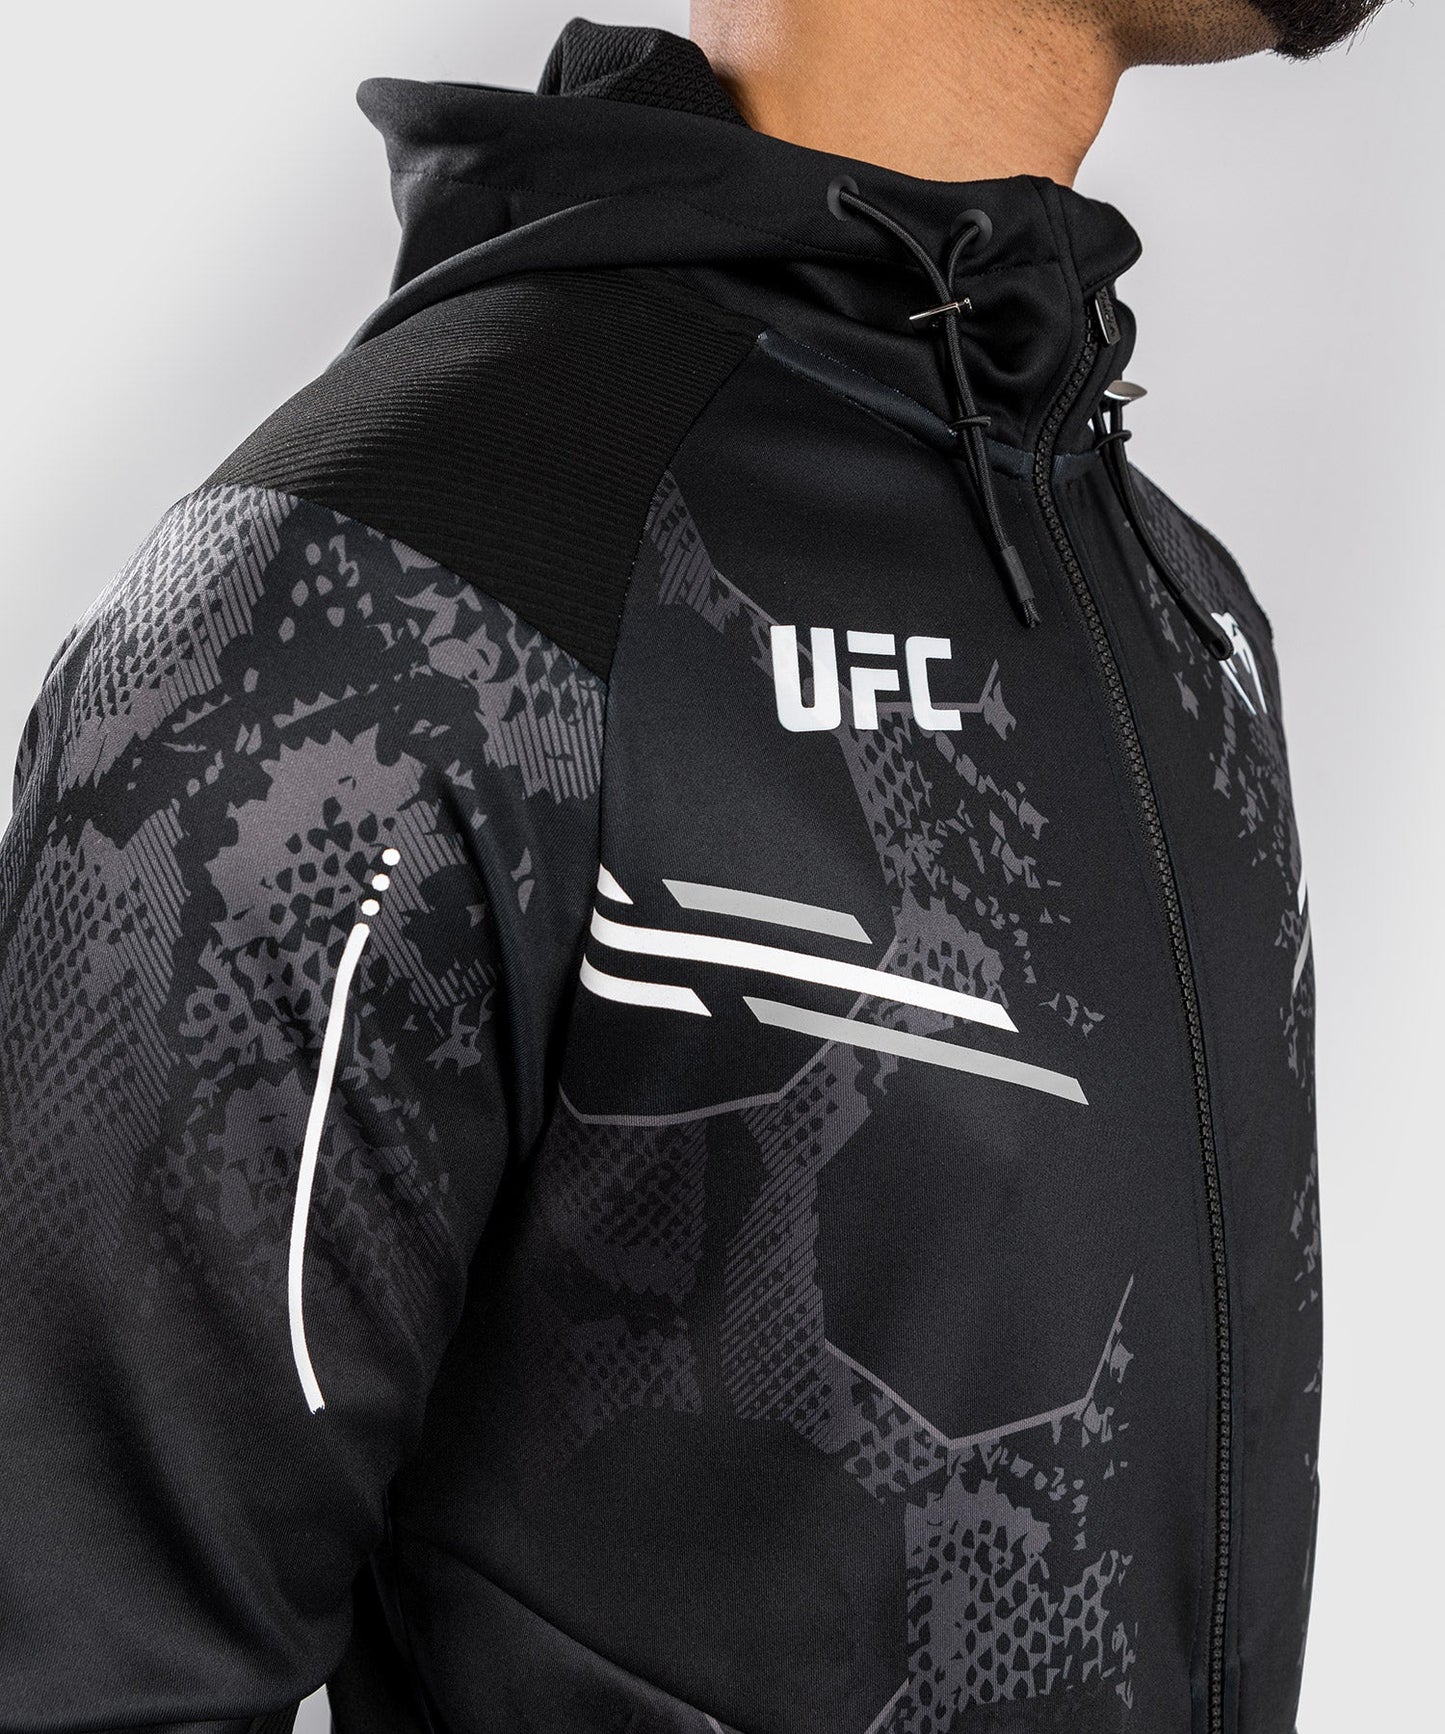 UFC Adrenaline by Venum Authentic Fight Night  Gepersonaliseerde jas voor Mannen - Zwart